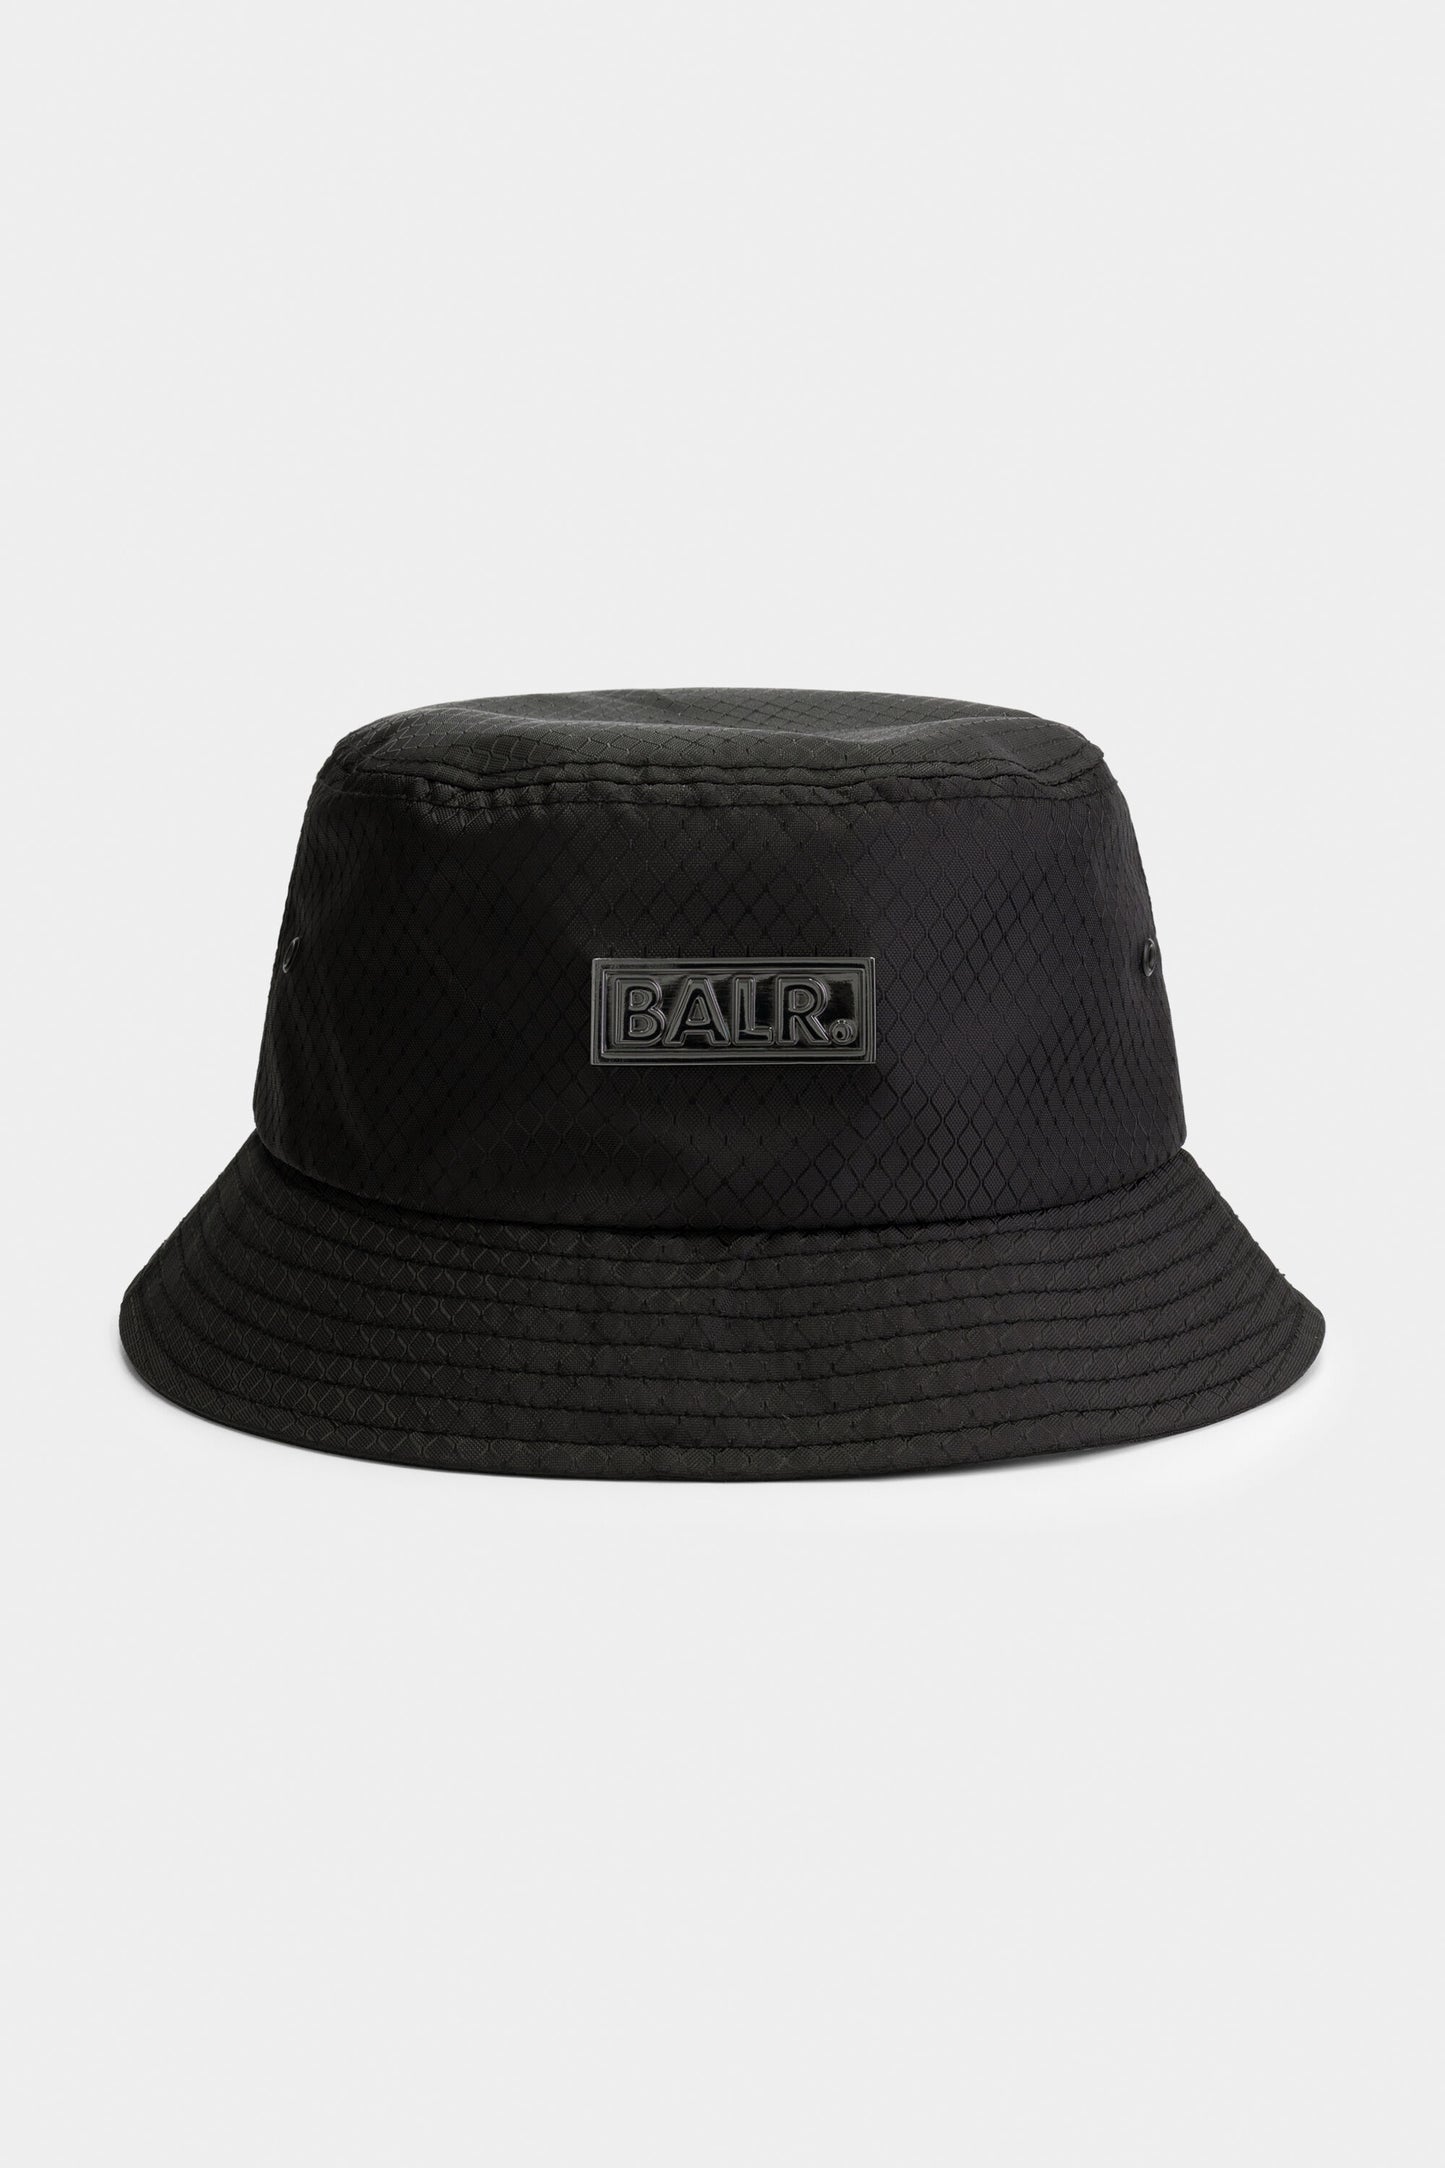 BALR. x MWII Ripstop Bucket Hat Jet Black